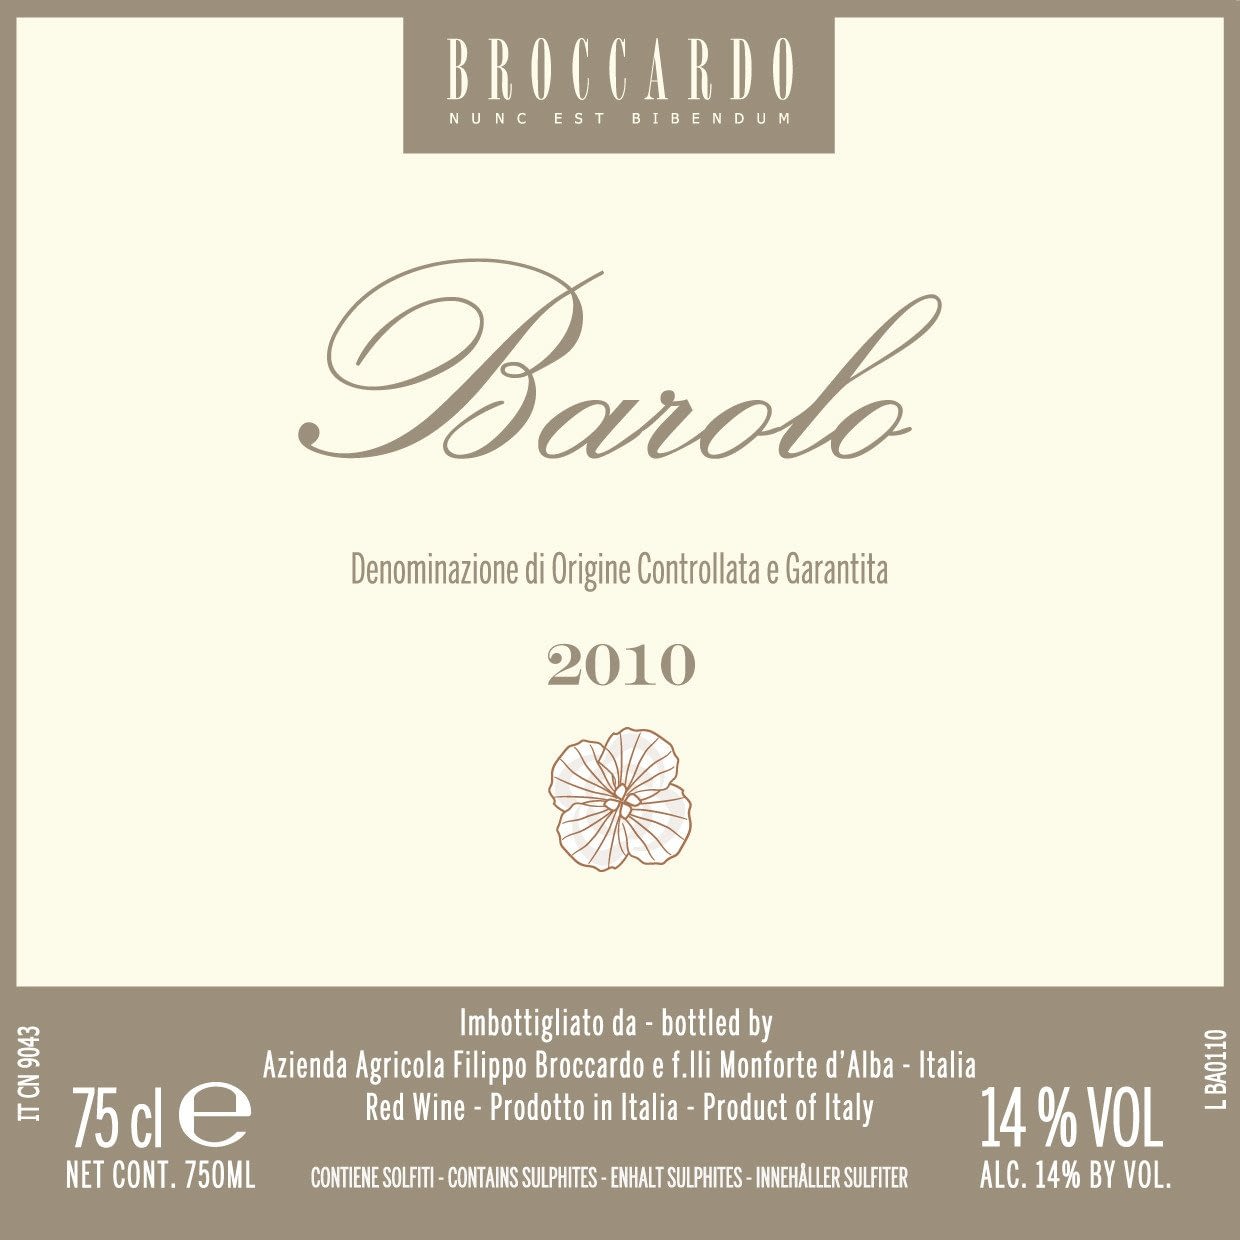 Broccardo Barolo 2013